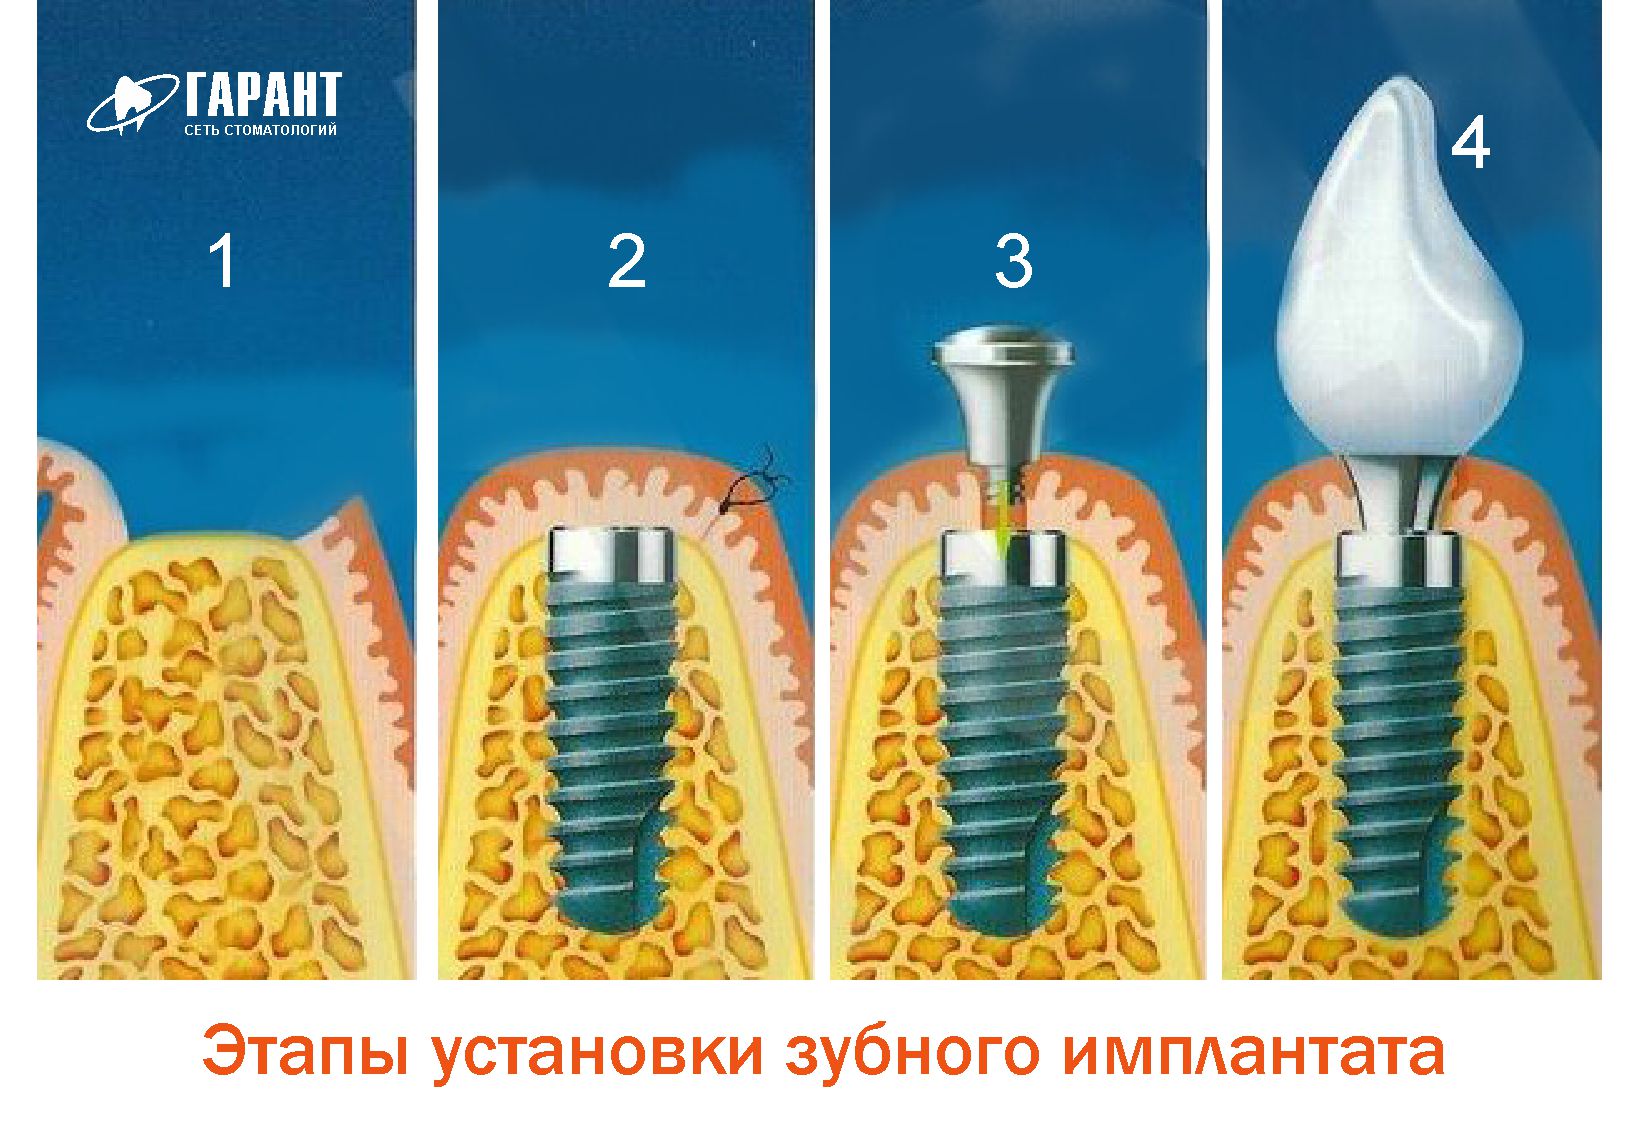 Этапы имплантации зубов абатмент